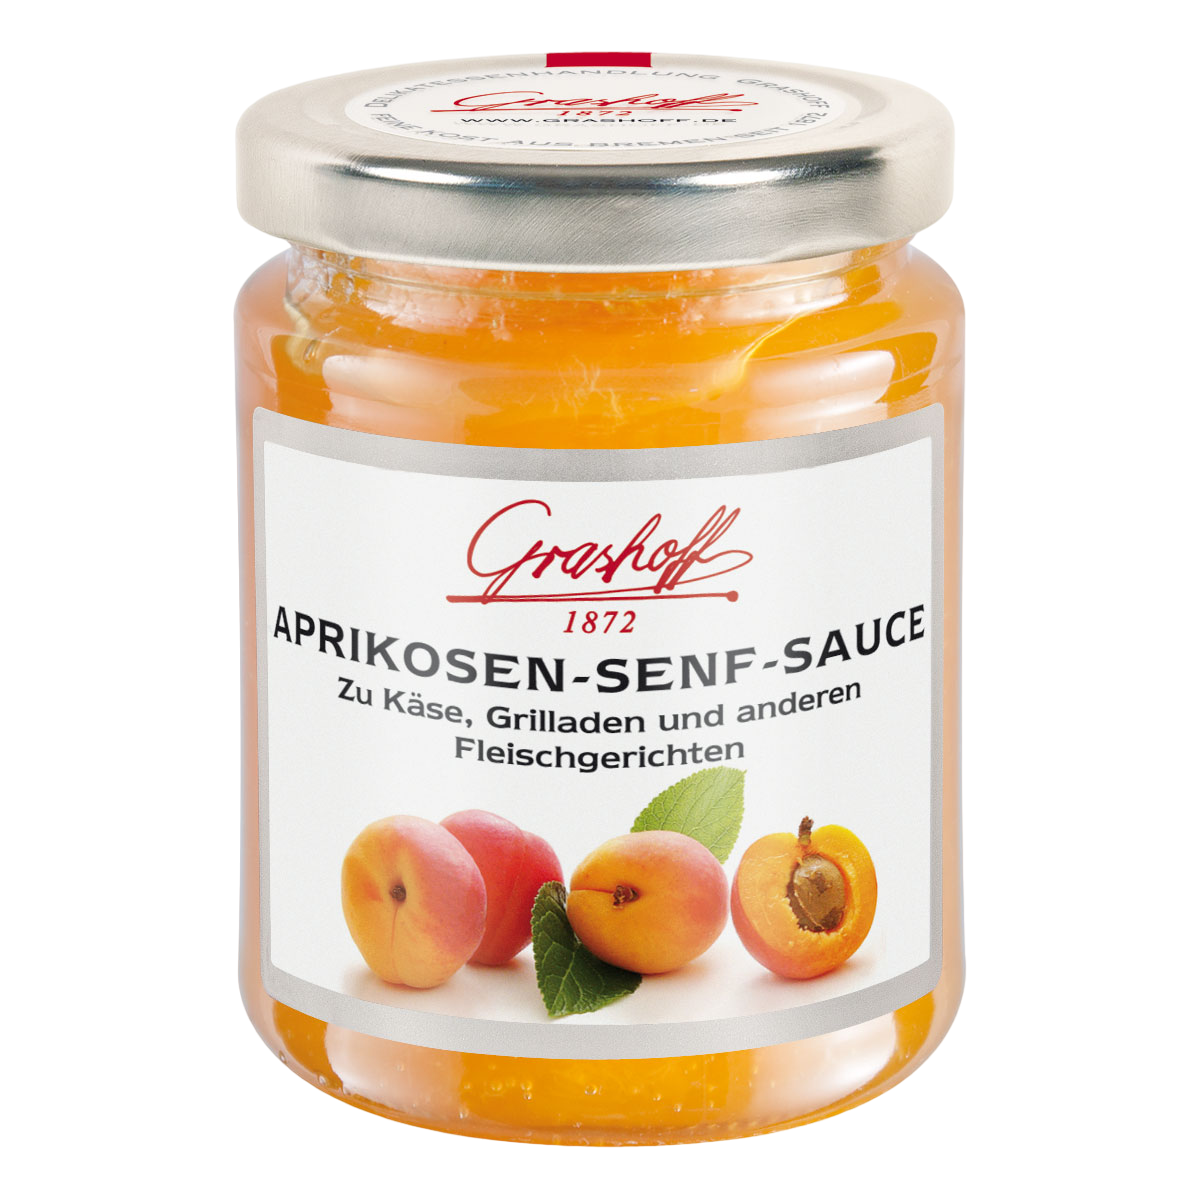 Aprikosen-Senf-Sauce, 200ml